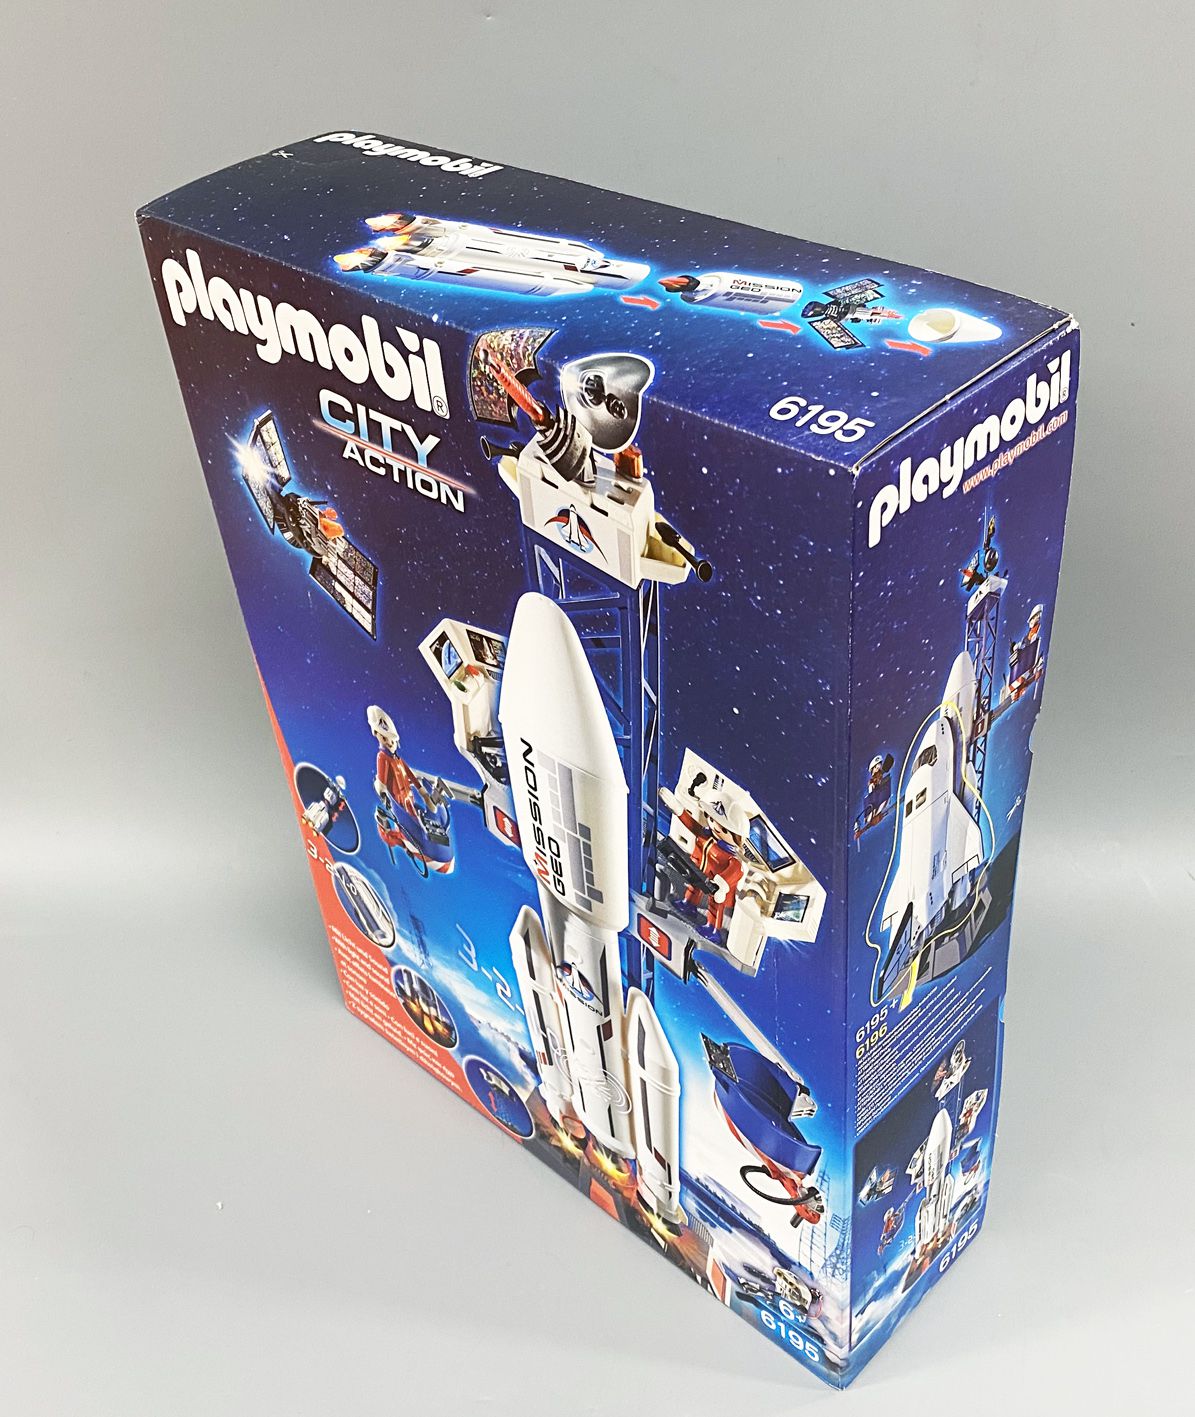 Mijnenveld Dan Kort geleden Playmobil - City Action (2014) - Space Rocket with Launch Site (6195)